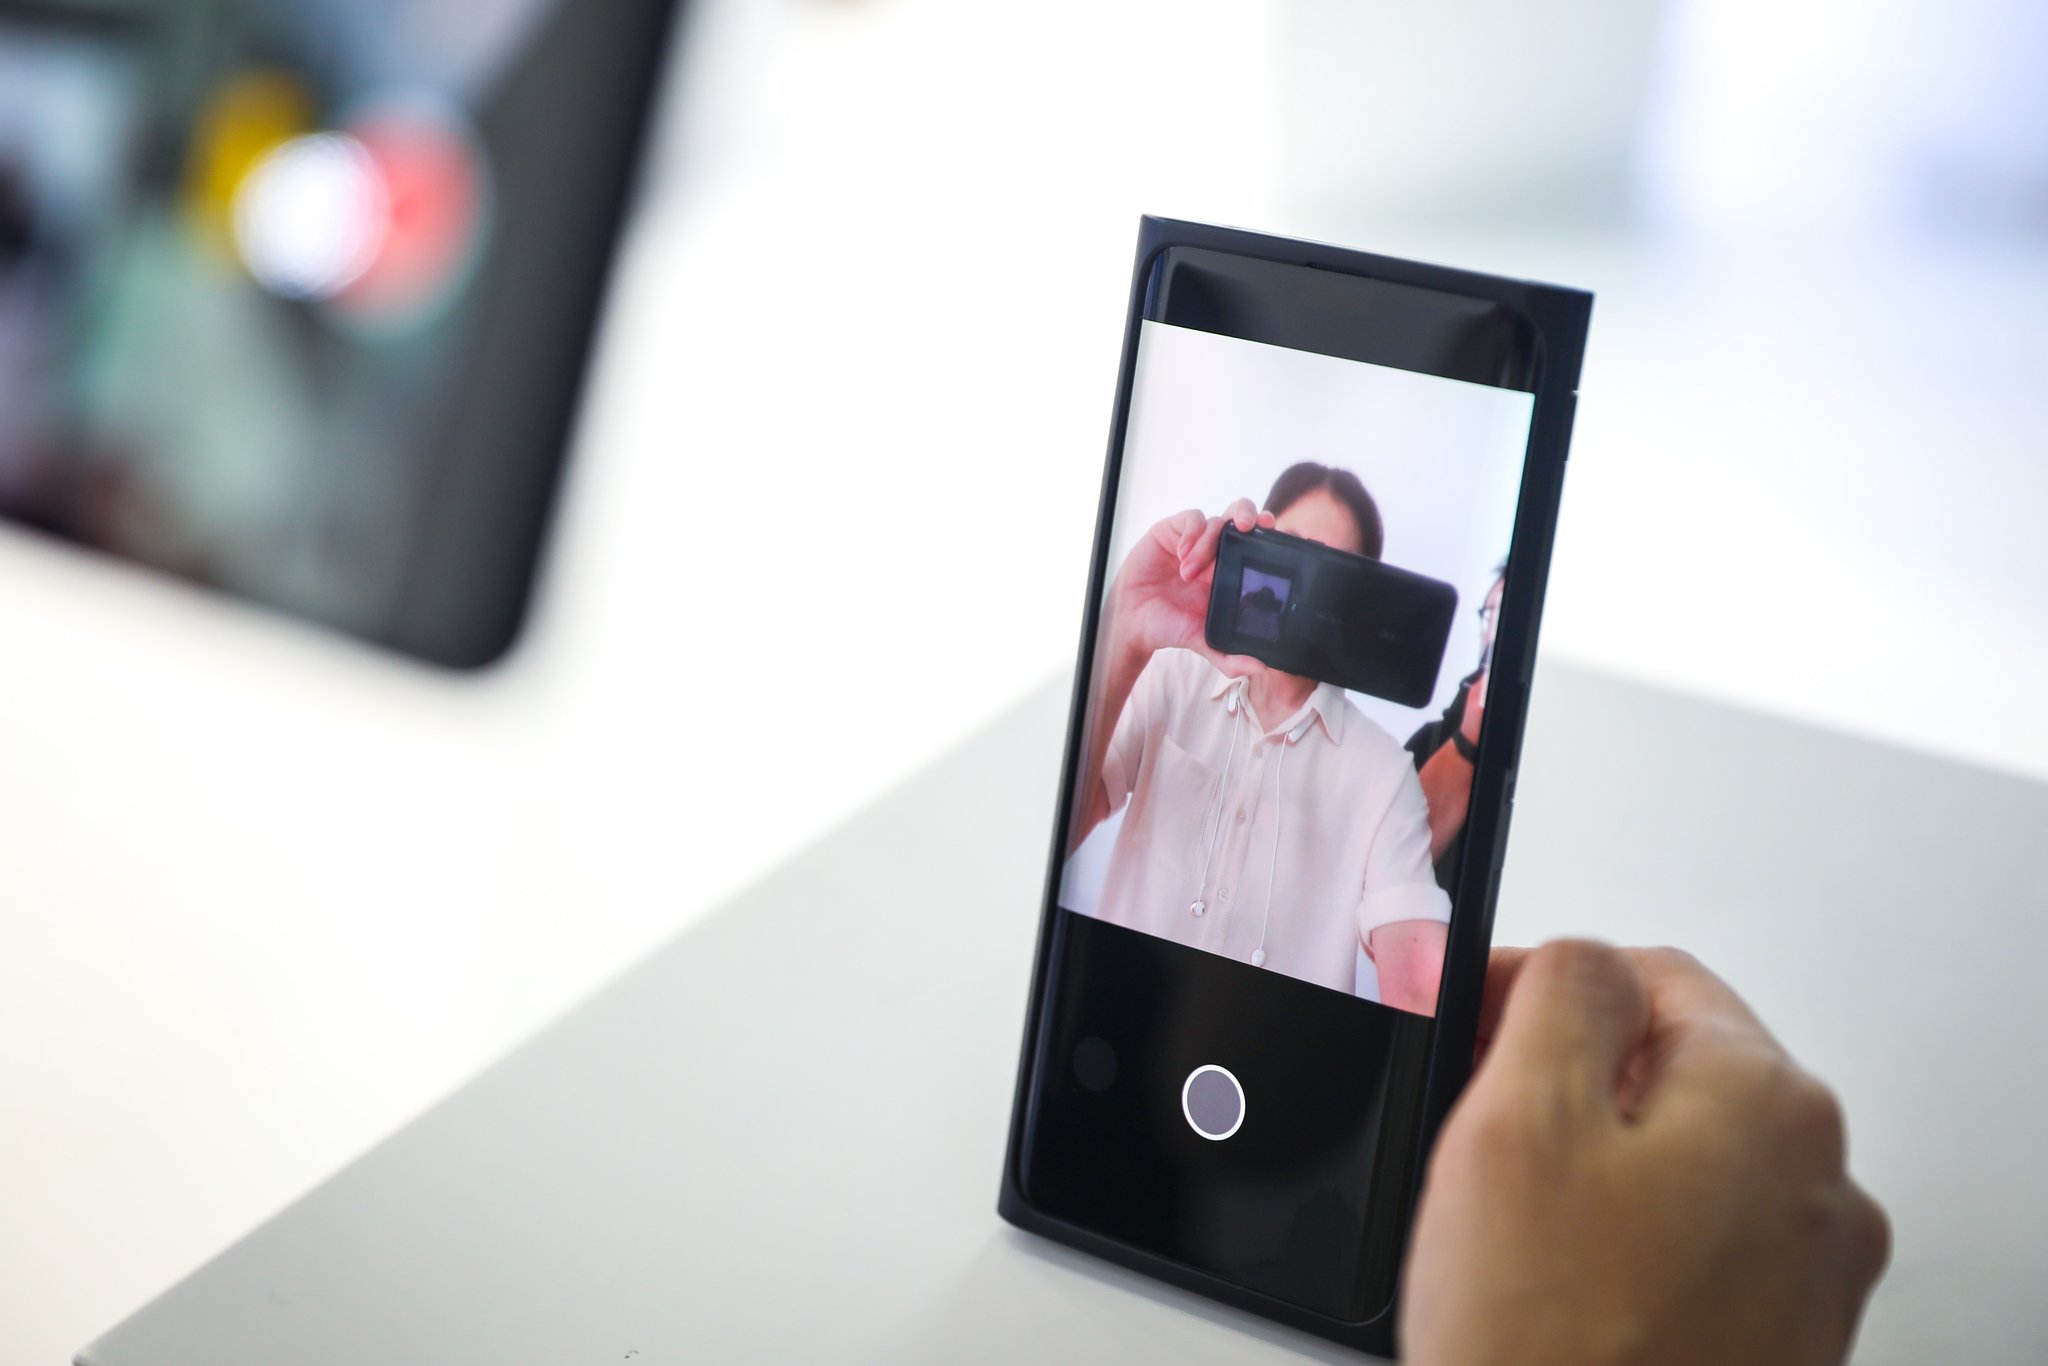 Oppo ekran altı kamera teknolojisini tanıttı